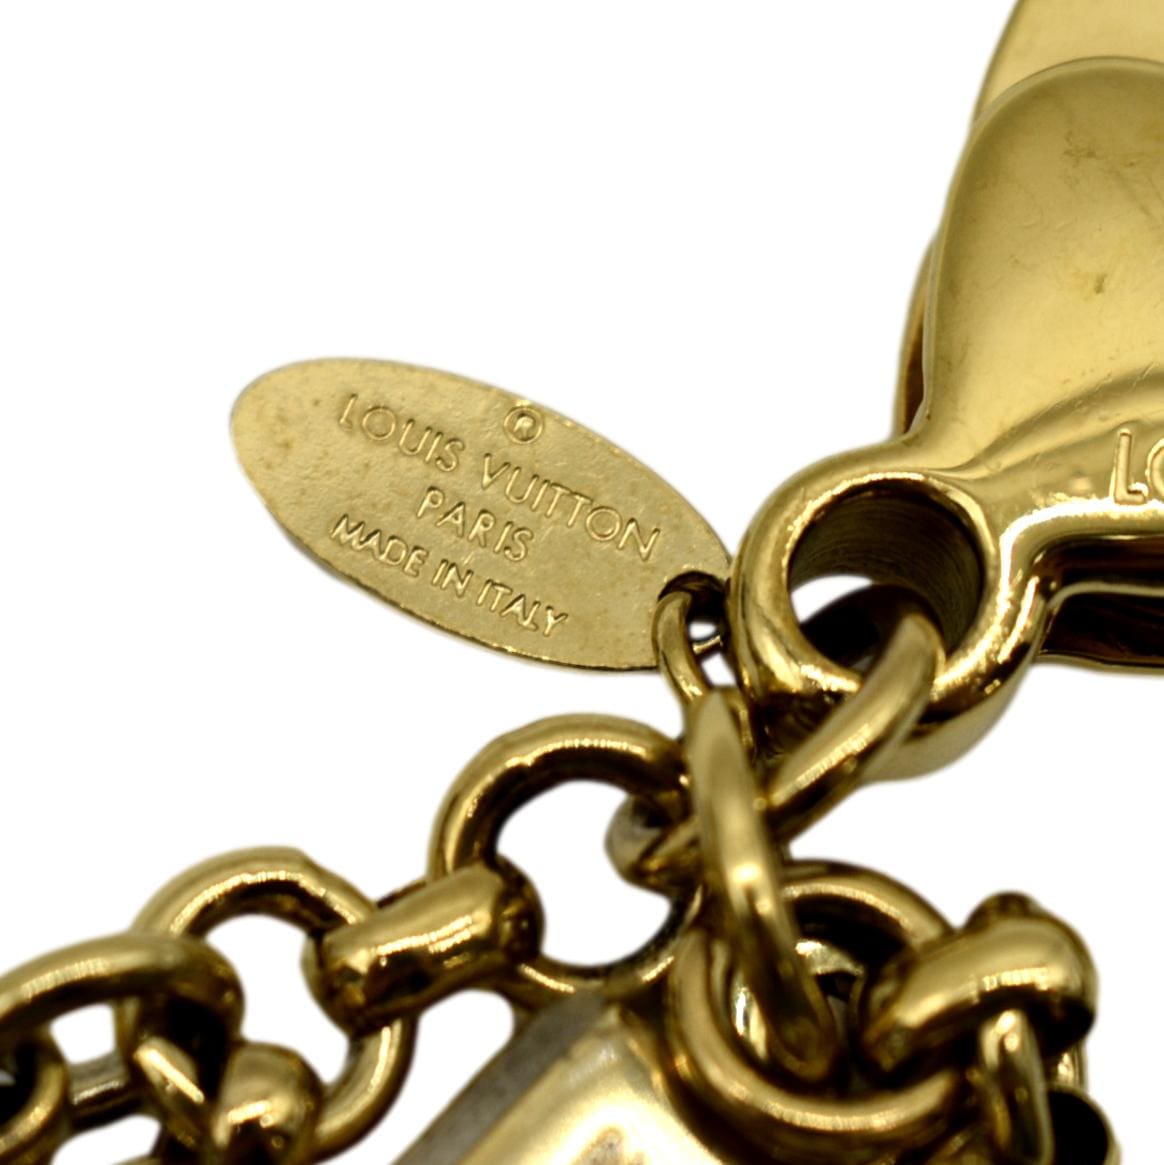 Cadenas bag charm Louis Vuitton Gold in Metal - 19131935